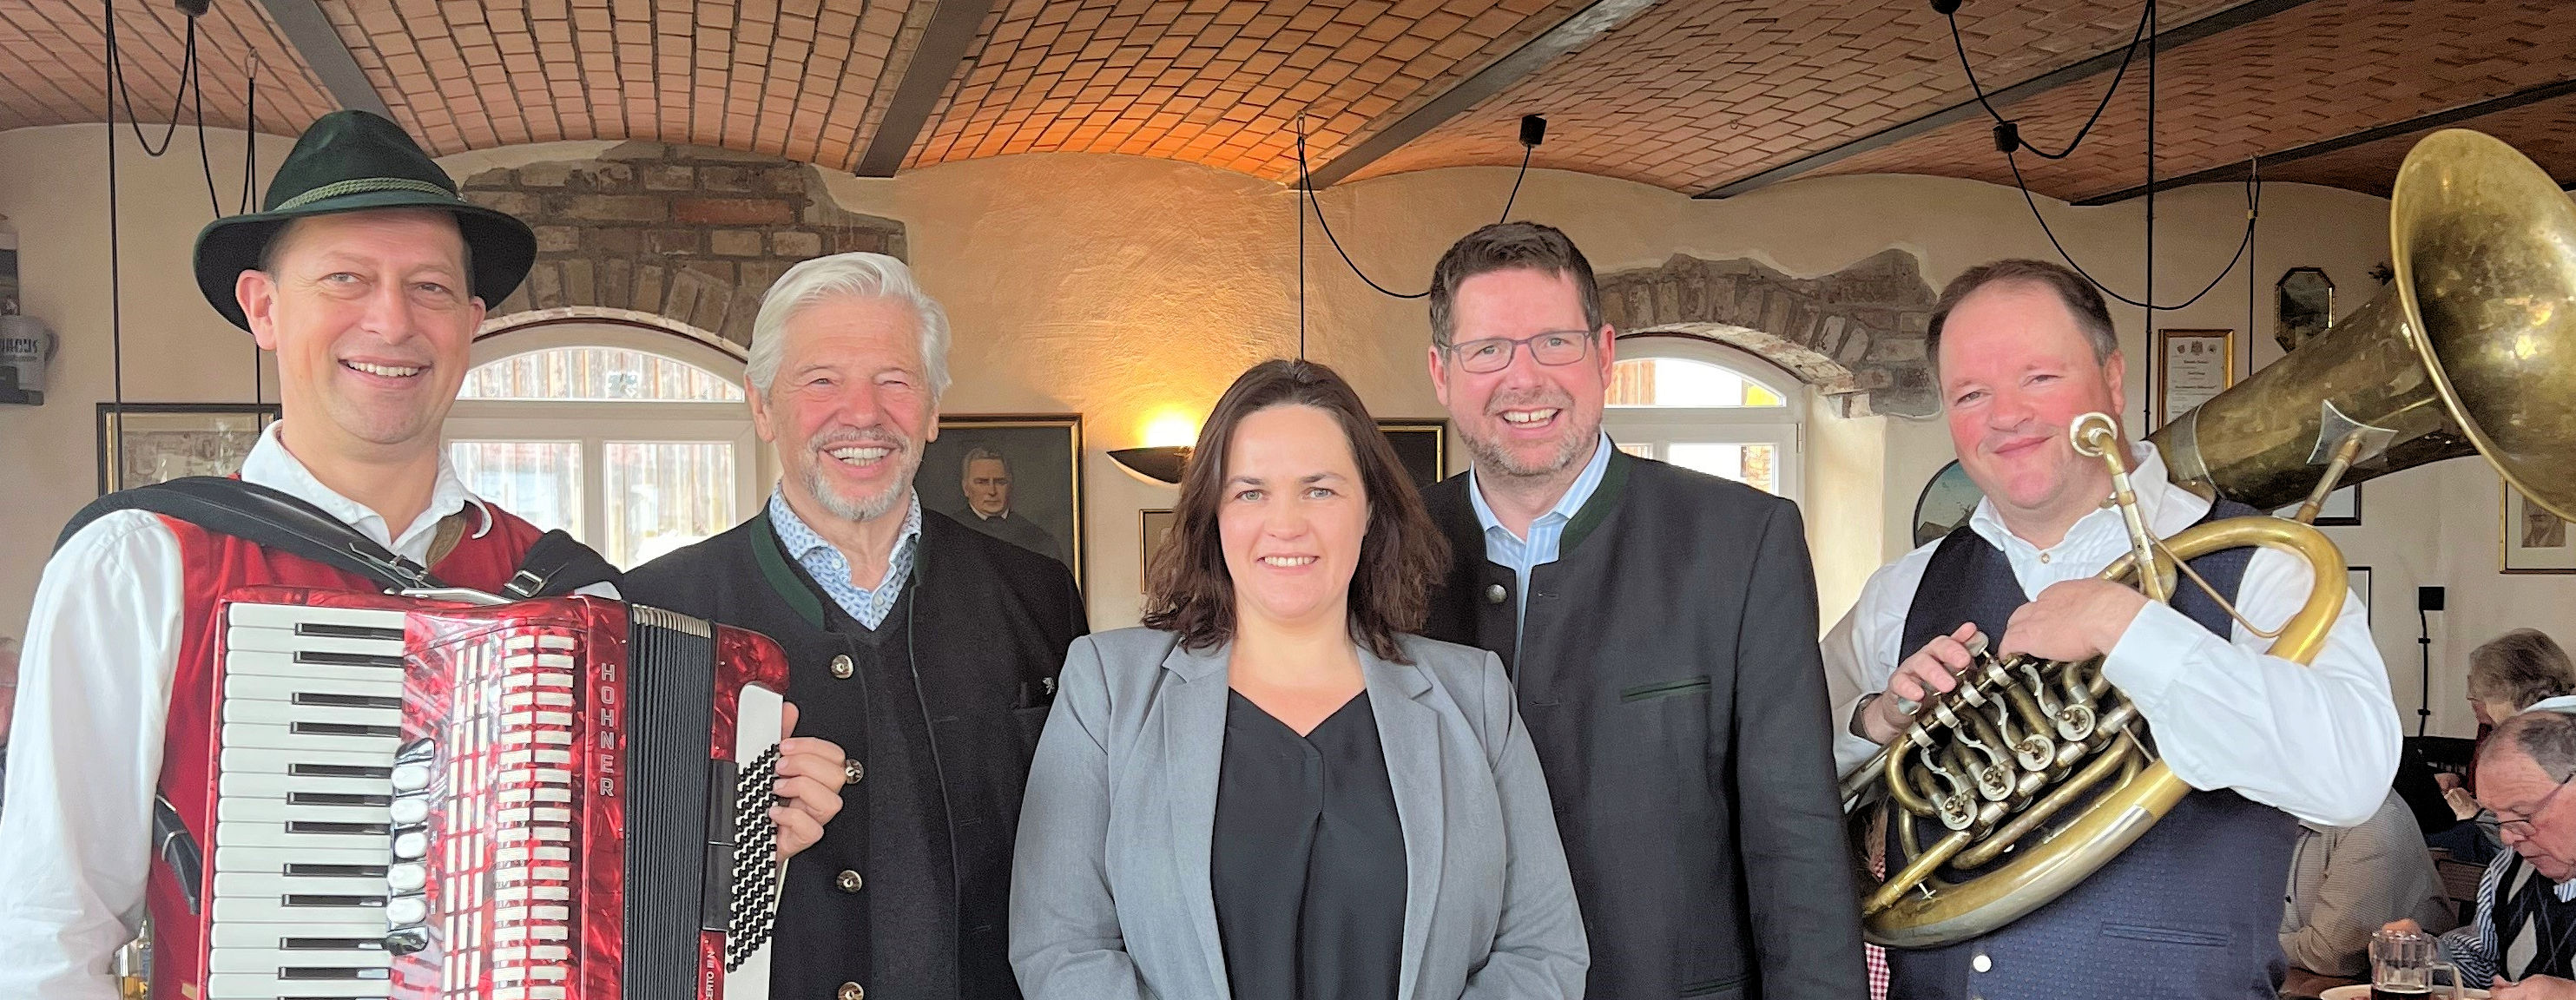 Unser Foto zeigt (von links): Martin Reger, SEN OAL Vorsitzender Gerhard Schempp, die 2. Bürgermeisterin von Kaltental Claudia Hindelang, Stephan Stracke, Hannes Ried.